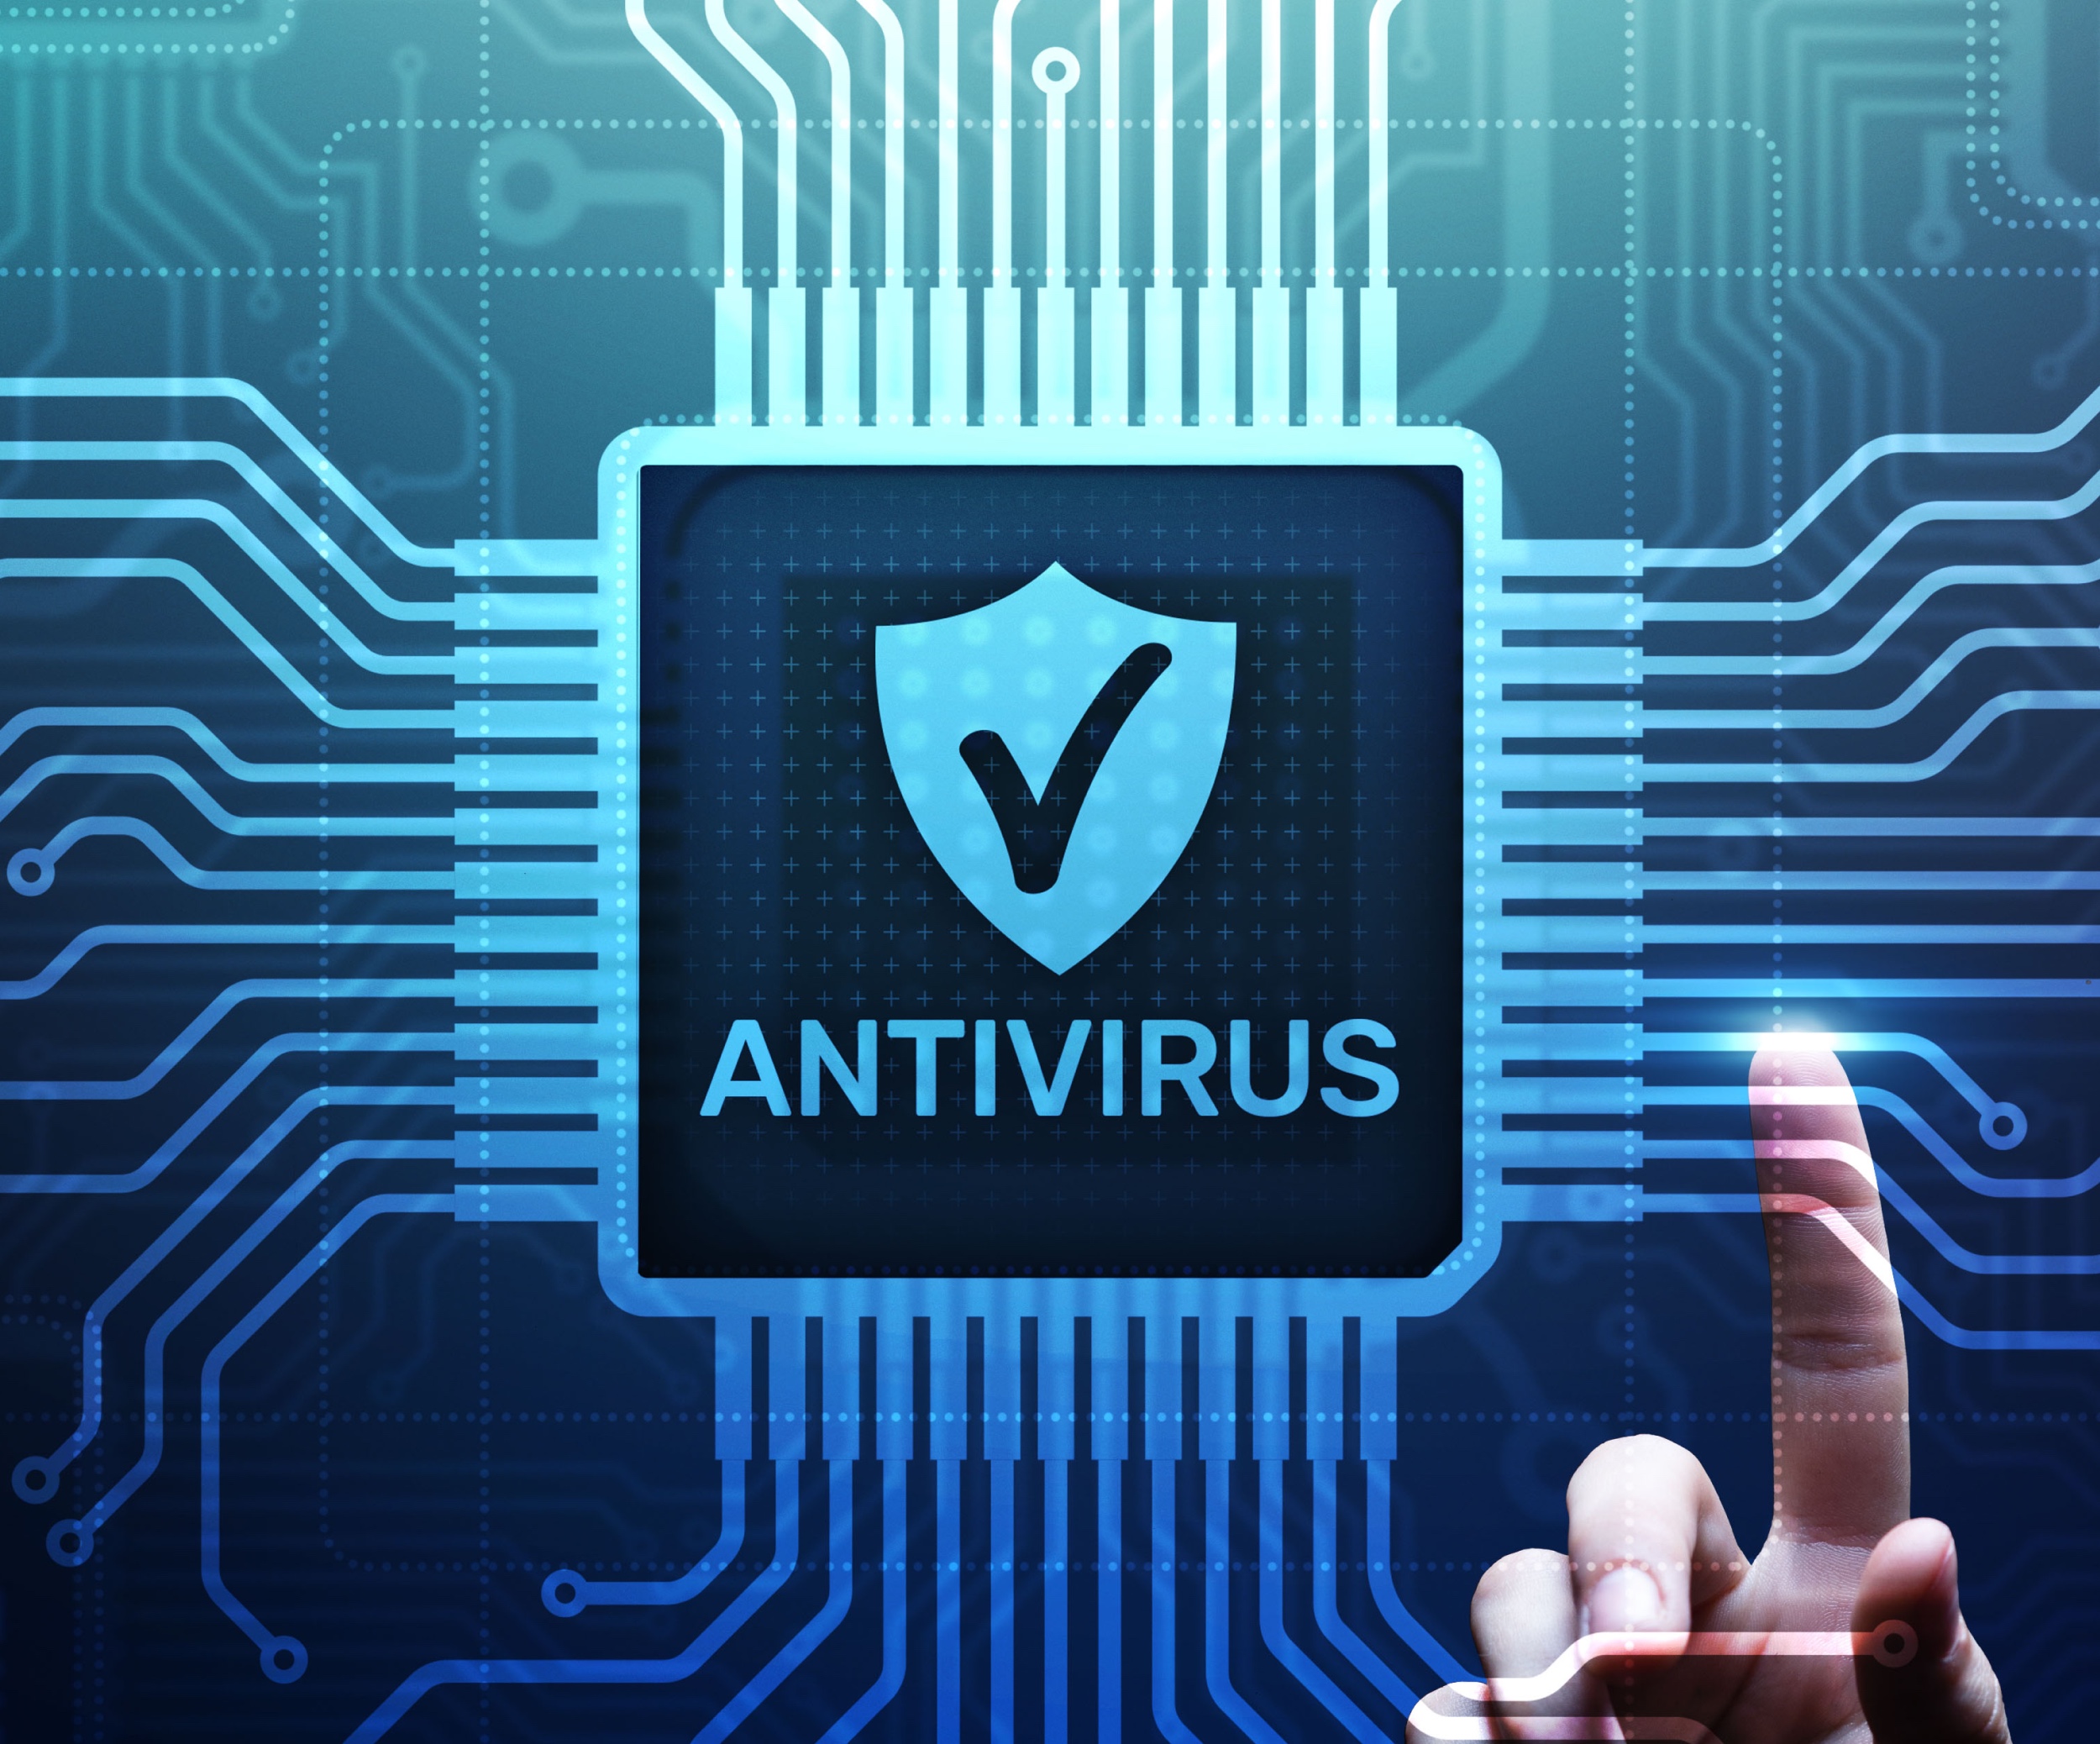 Télécharger AVG Antivirus Gratuit - Sécurité - Les Numériques